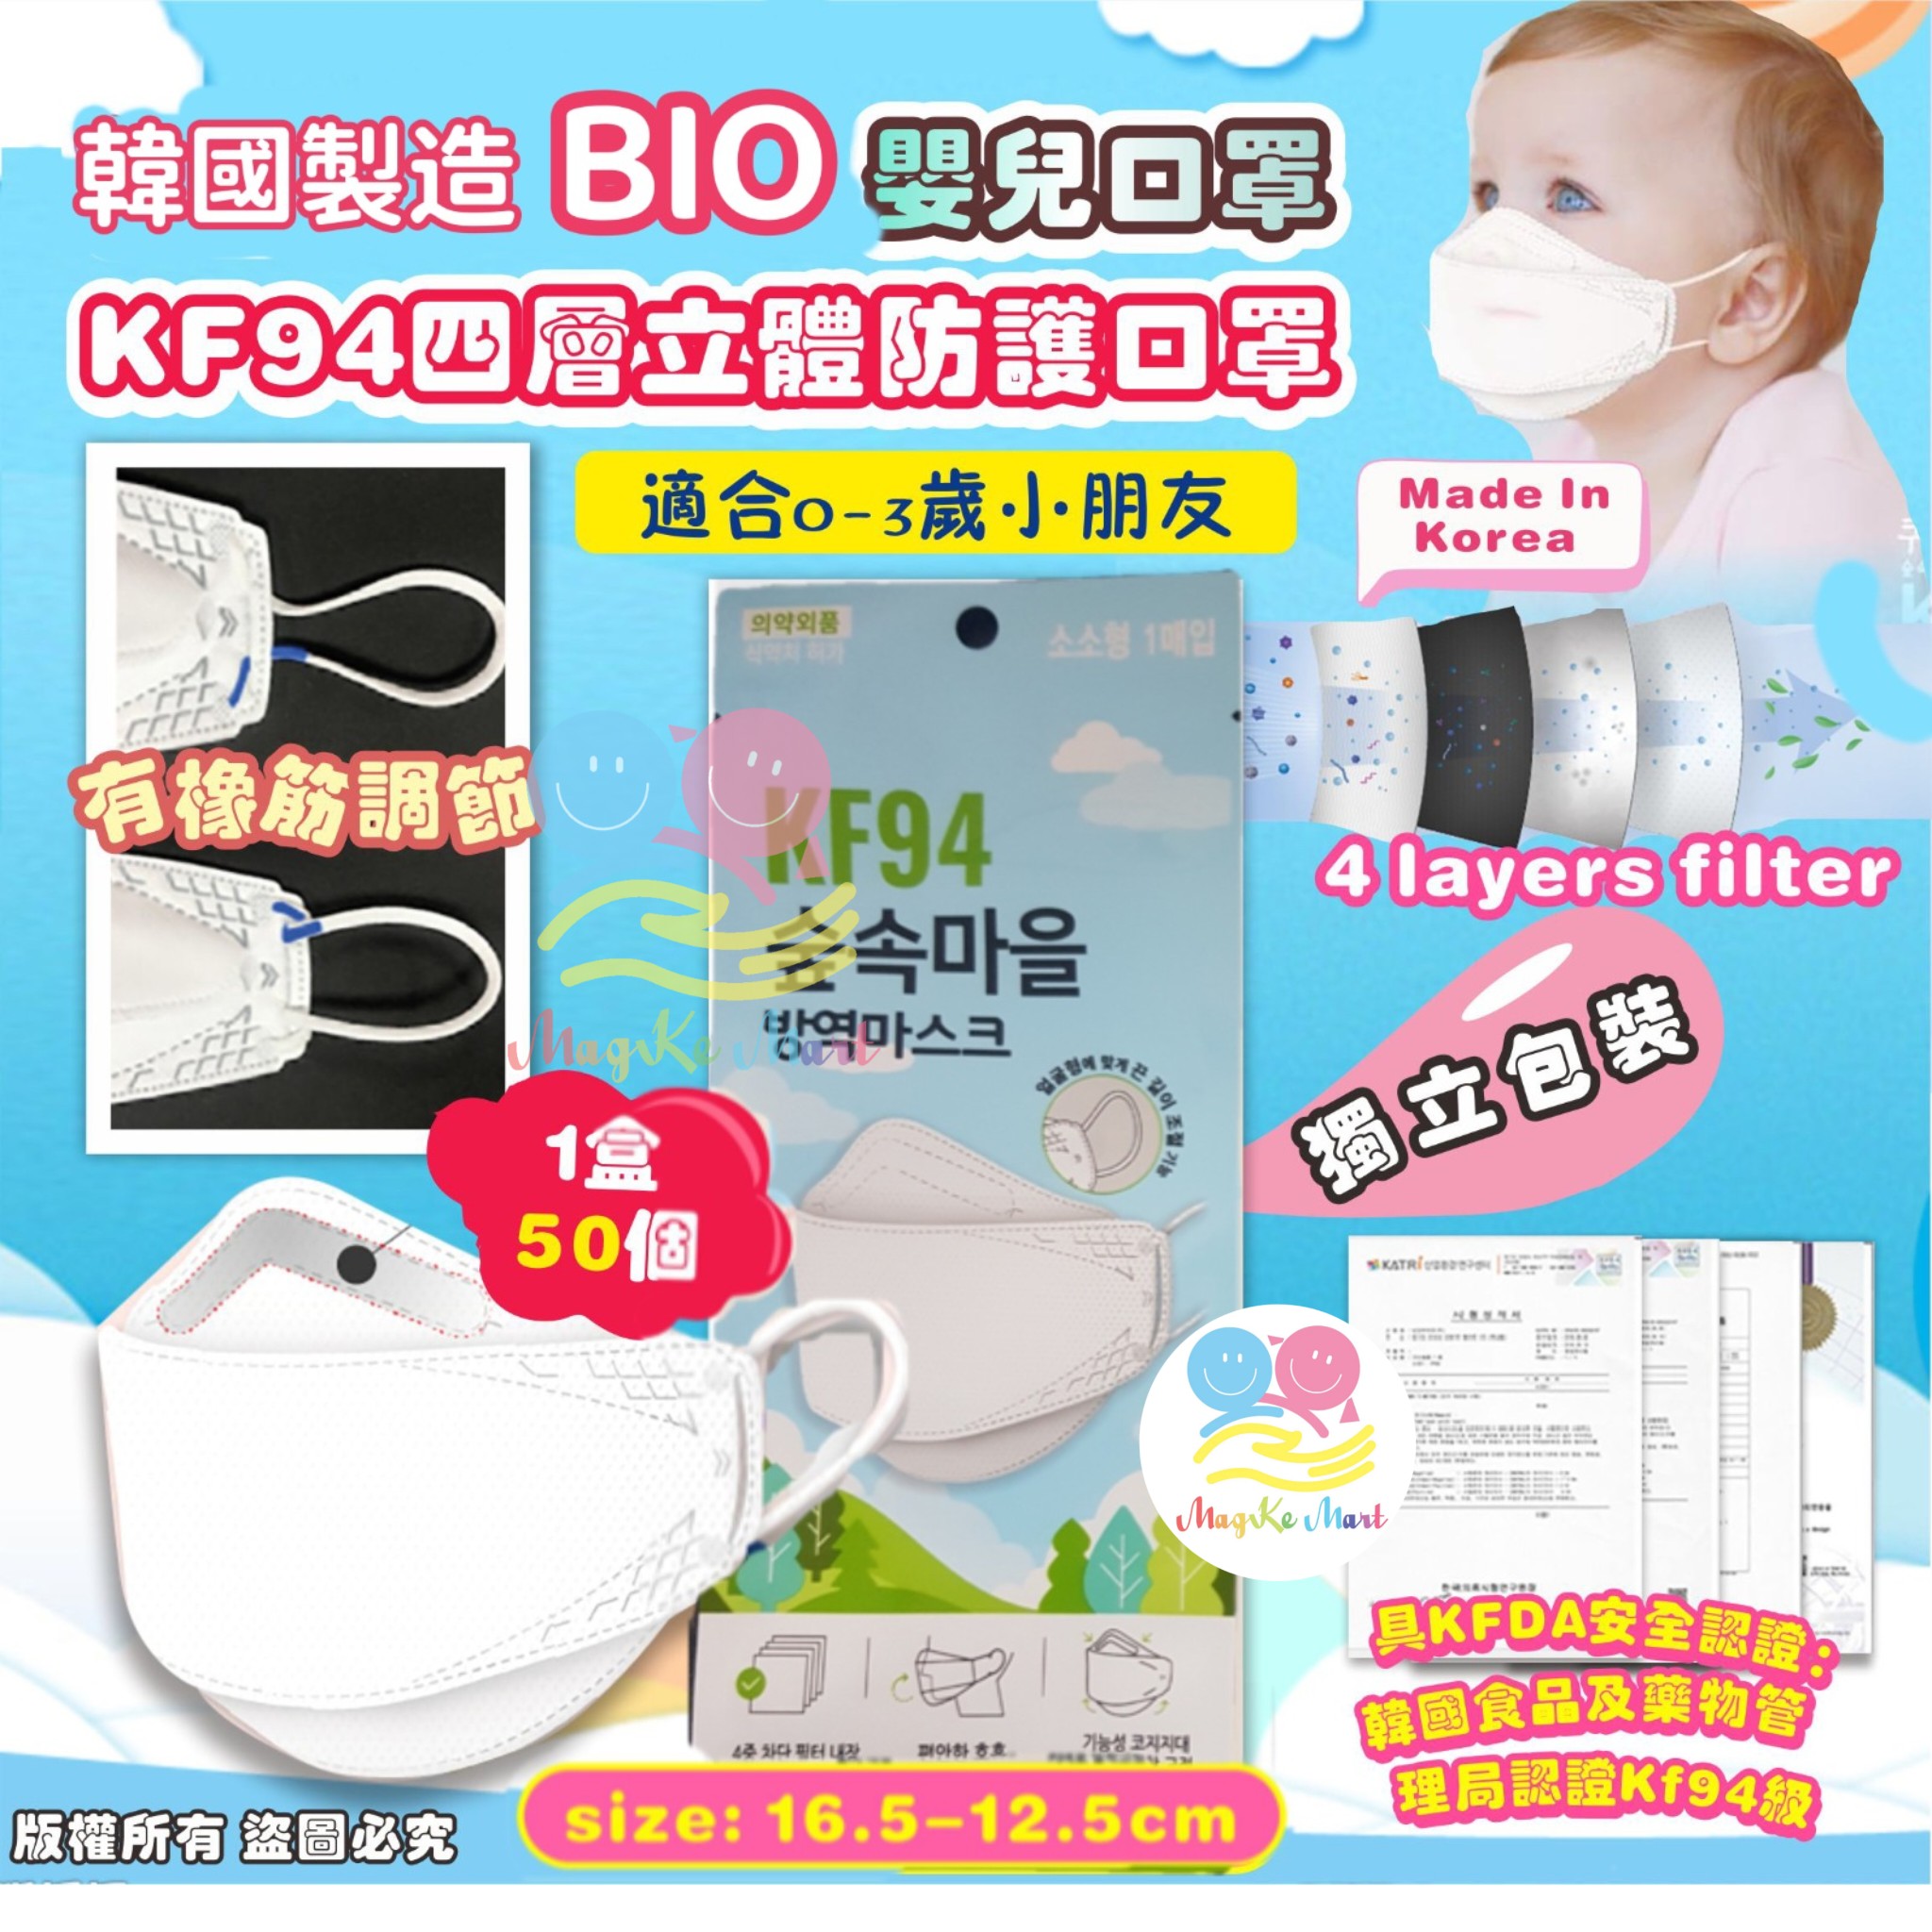 韓國 Bio KF94四層立體防護嬰幼兒口罩(1盒50個)(獨立包裝)